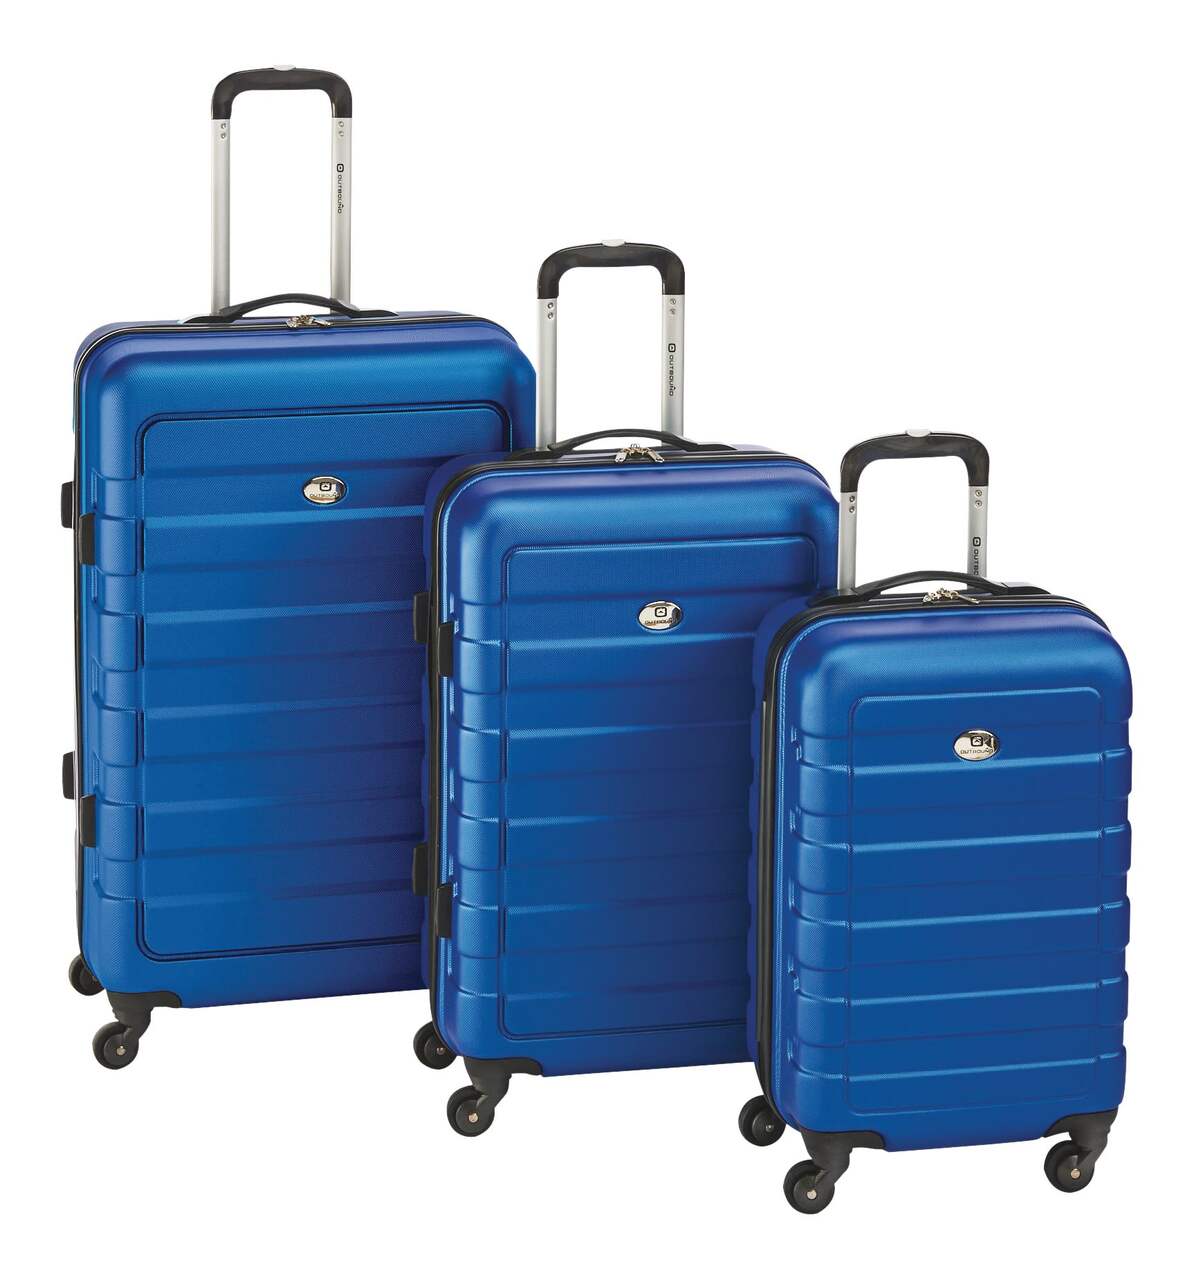 Ensemble de 3 valises rigides à roulettes pivotantes Outbound, choix varié